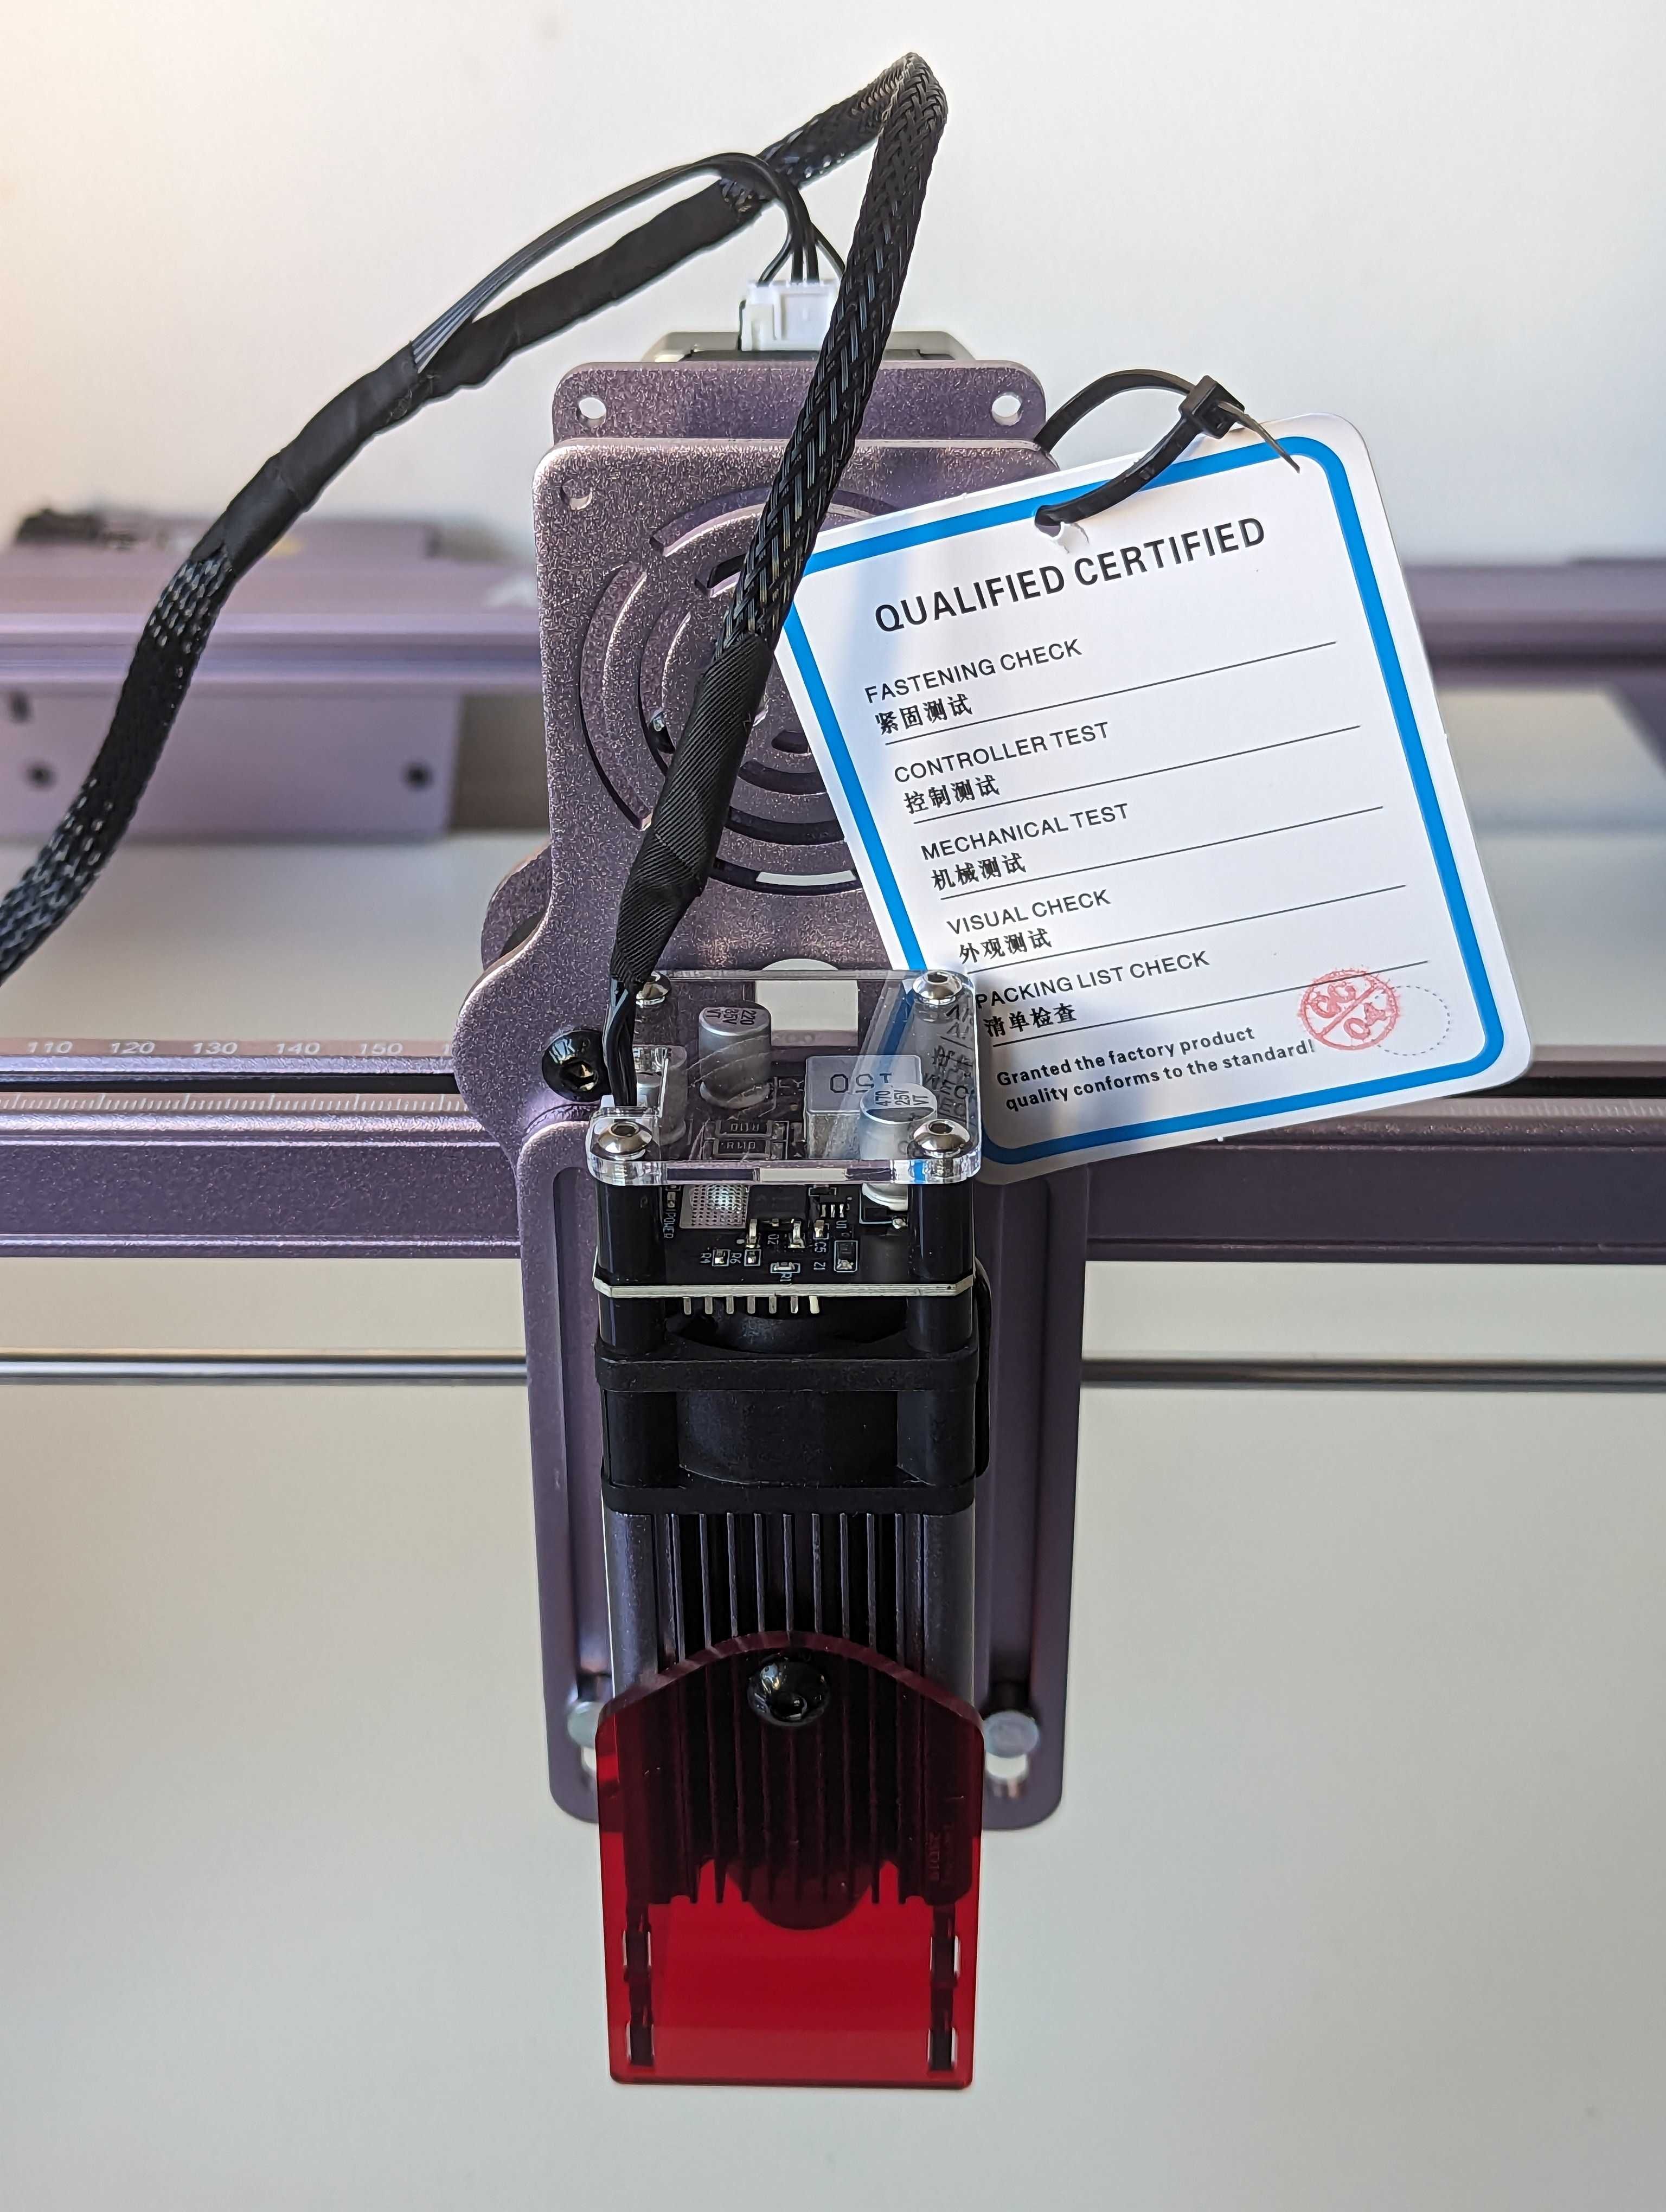 Máquina de Corte e Impressora de Gravação a Laser | Atomstack A5 Pro